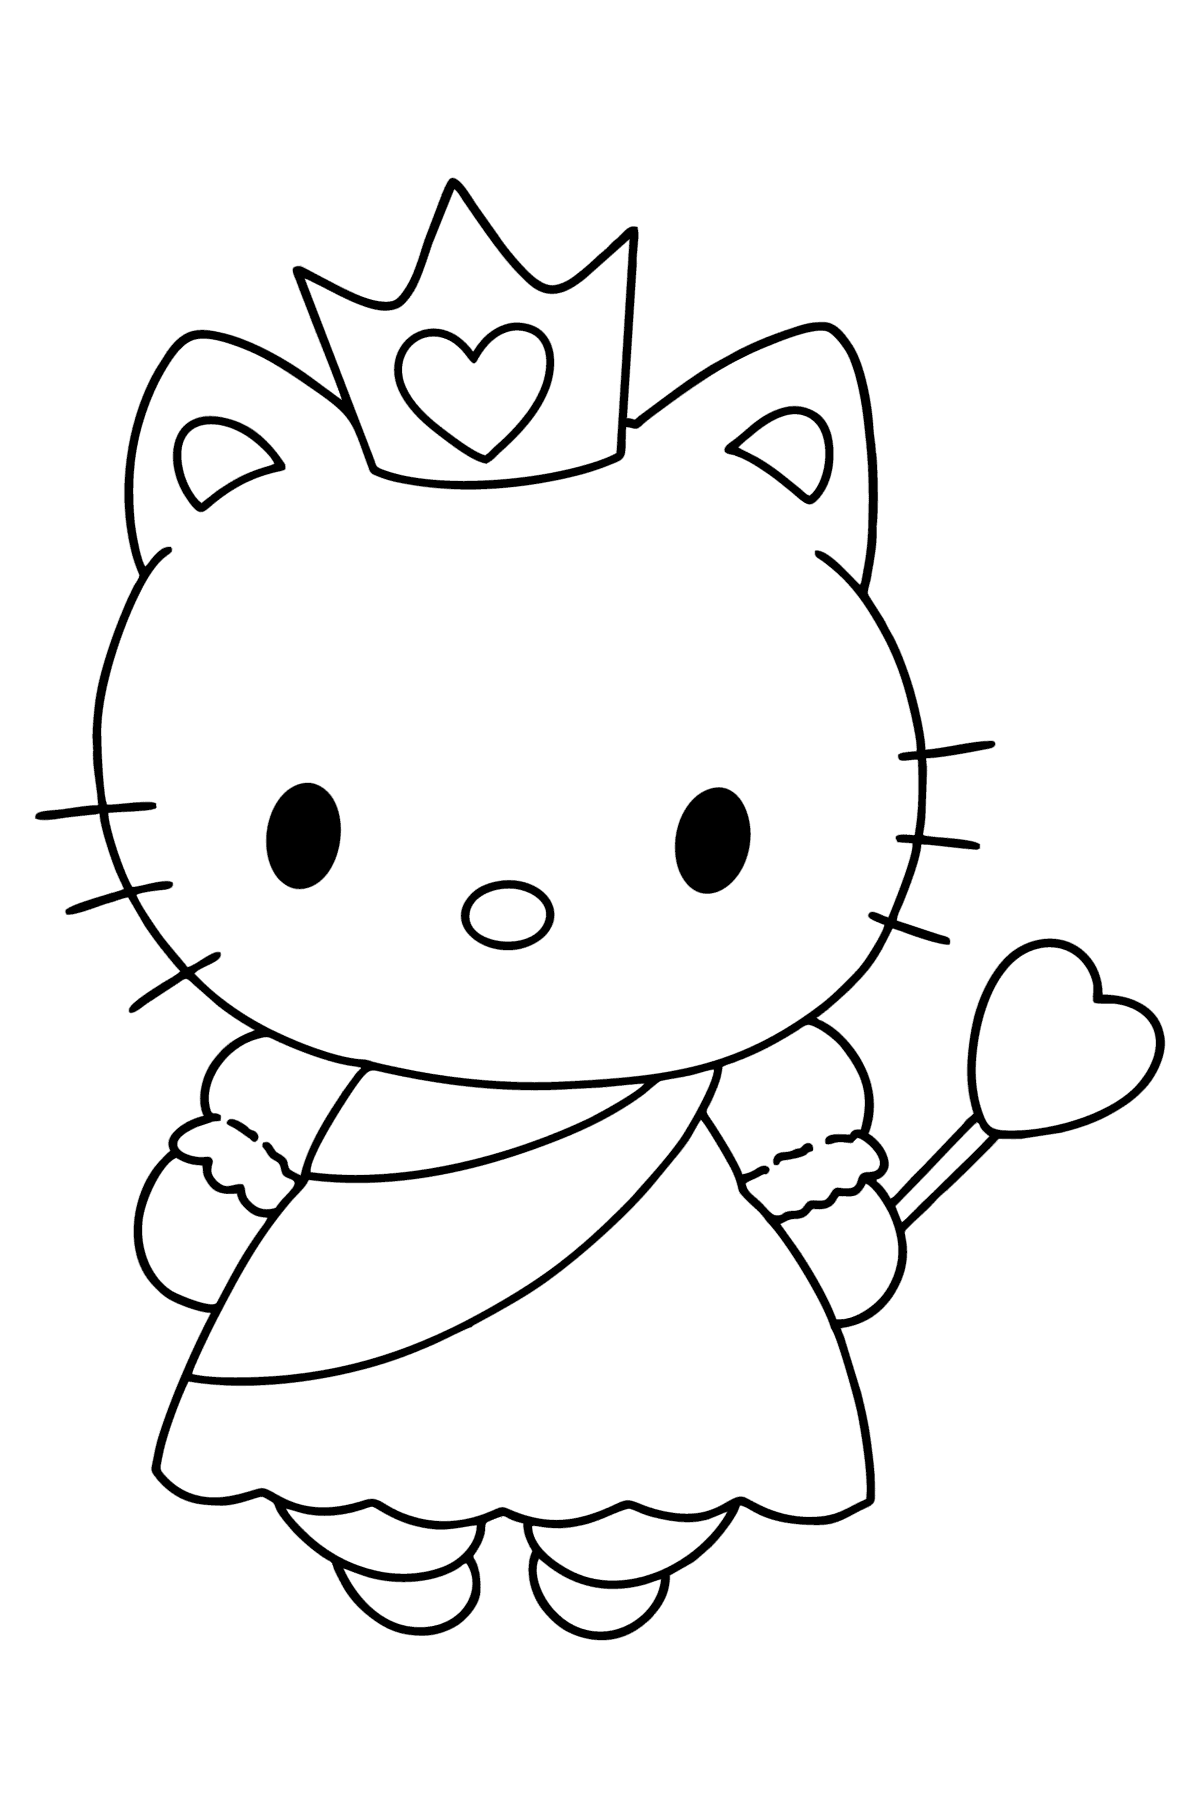 Ausmalbild Hello Kitty Princess - Malvorlagen für Kinder